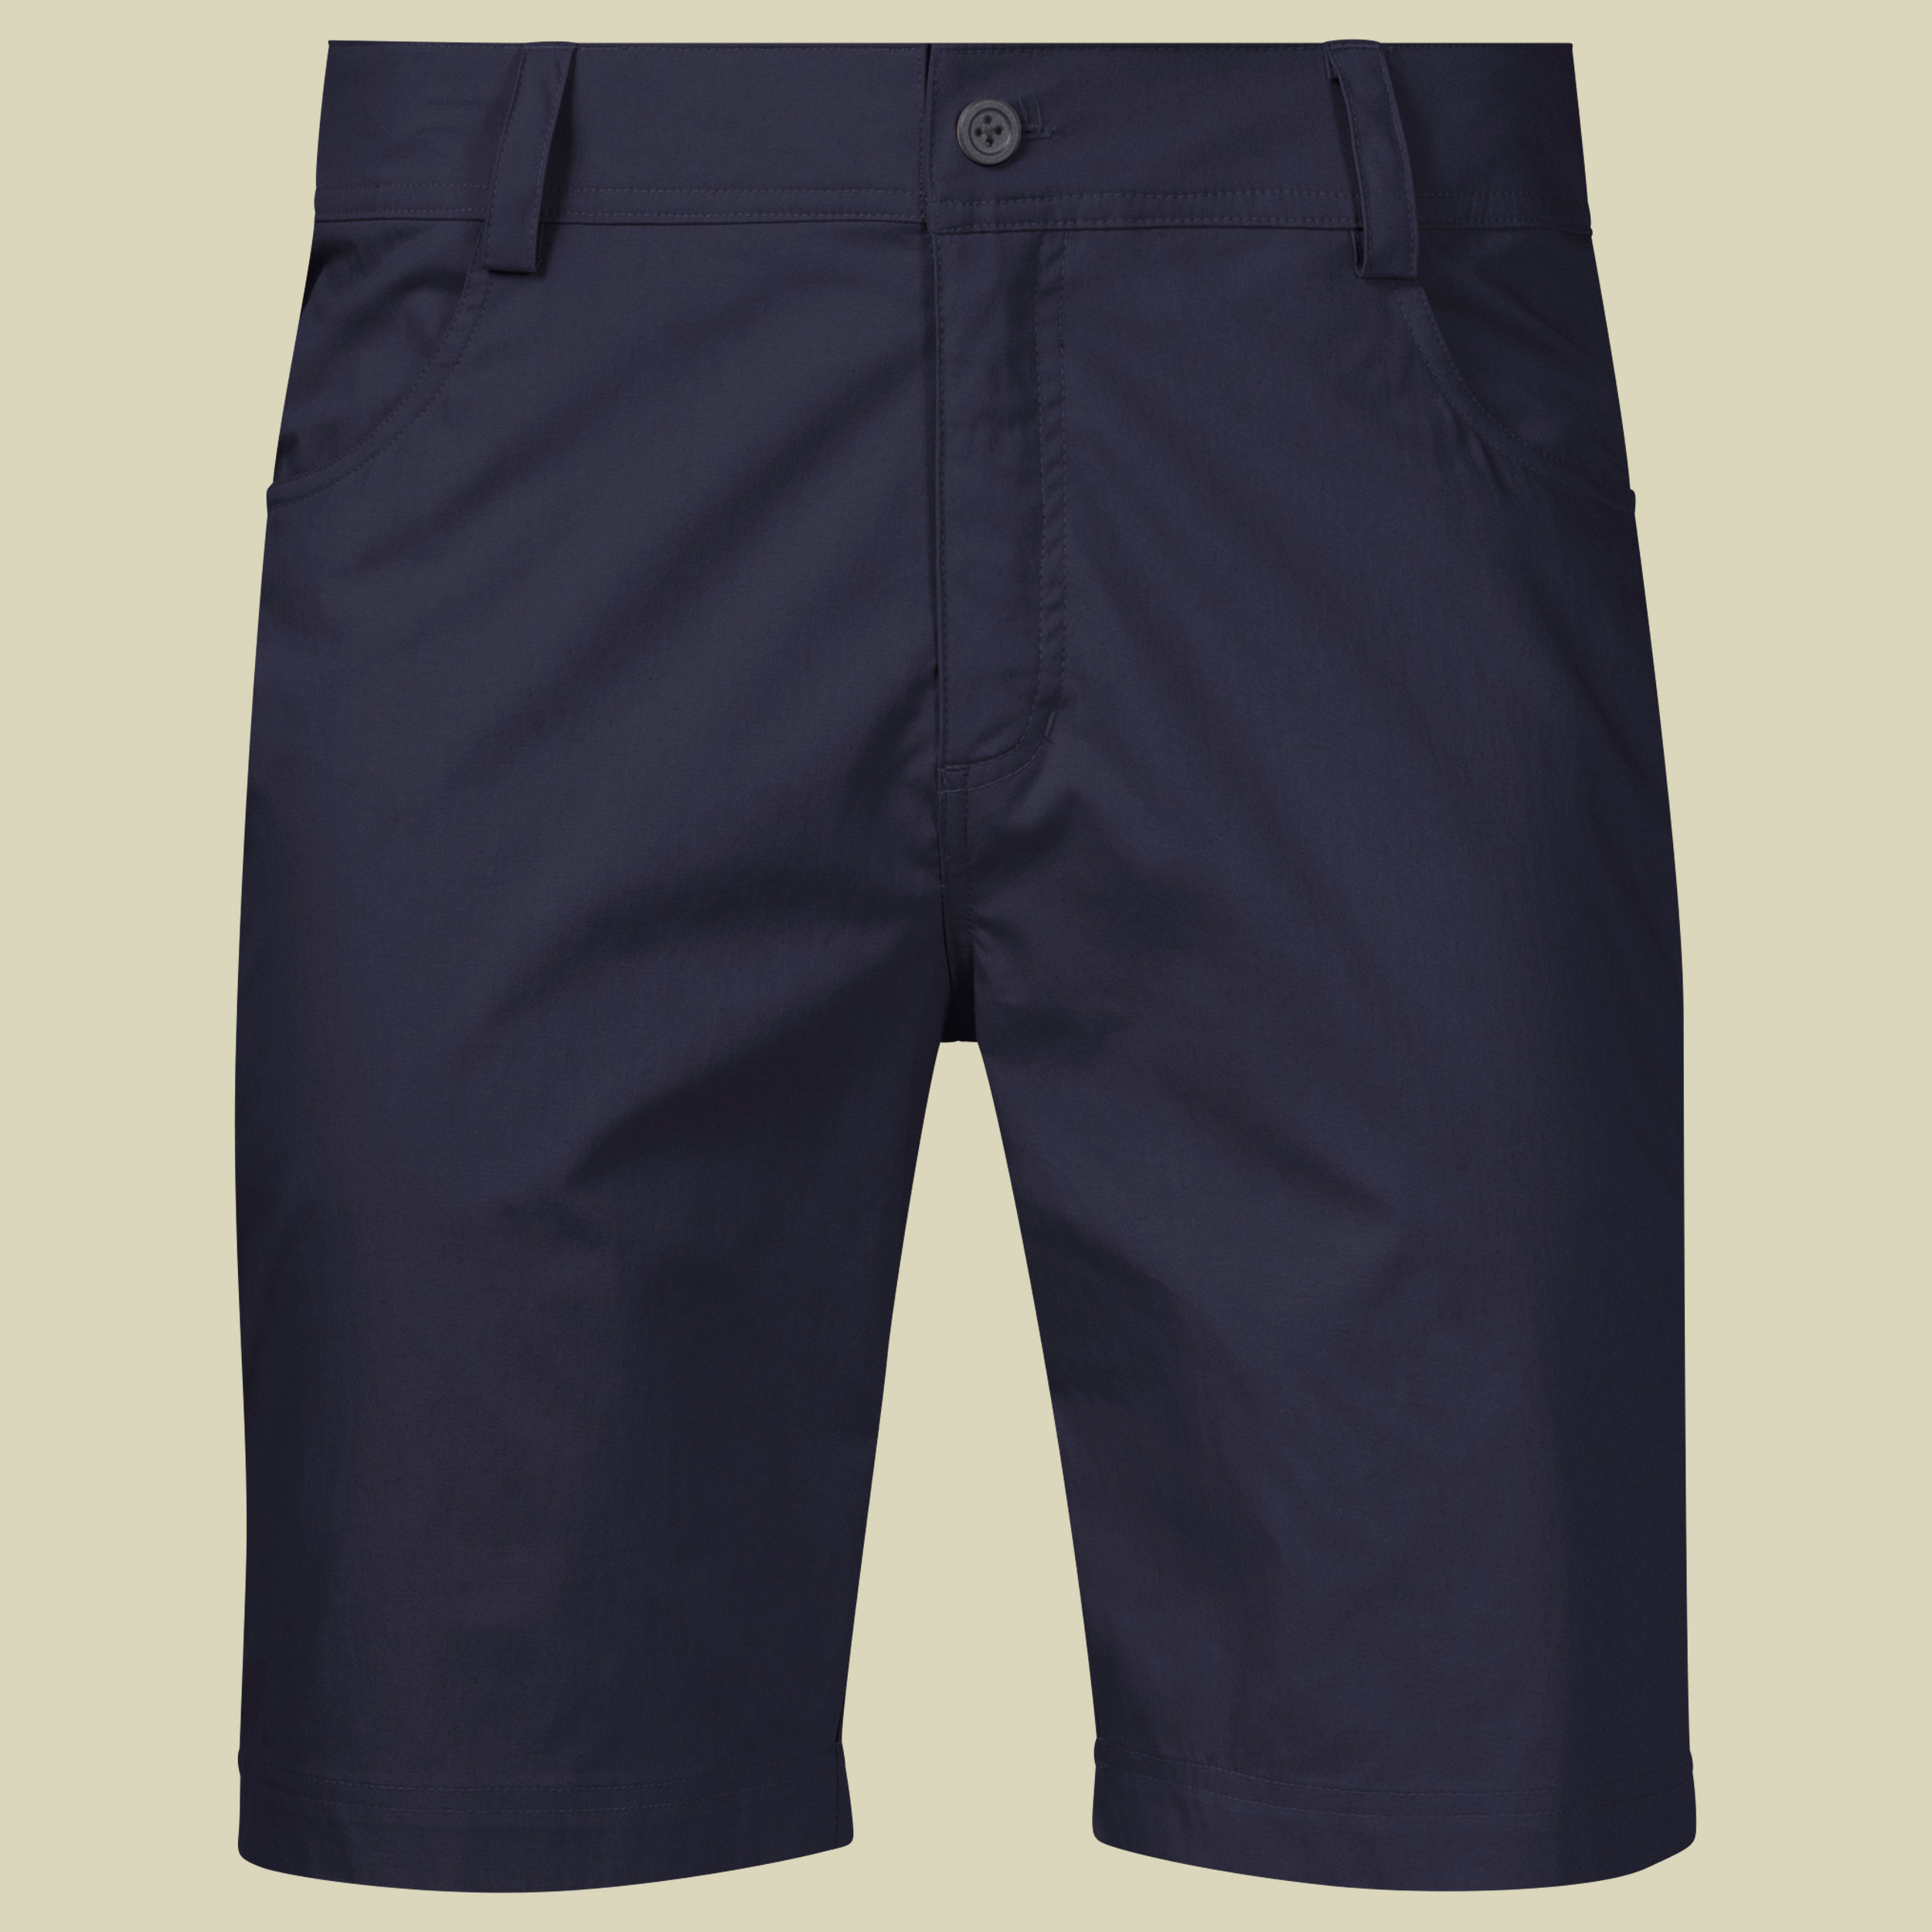 Oslo Shorts Men Größe XL Farbe dark navy